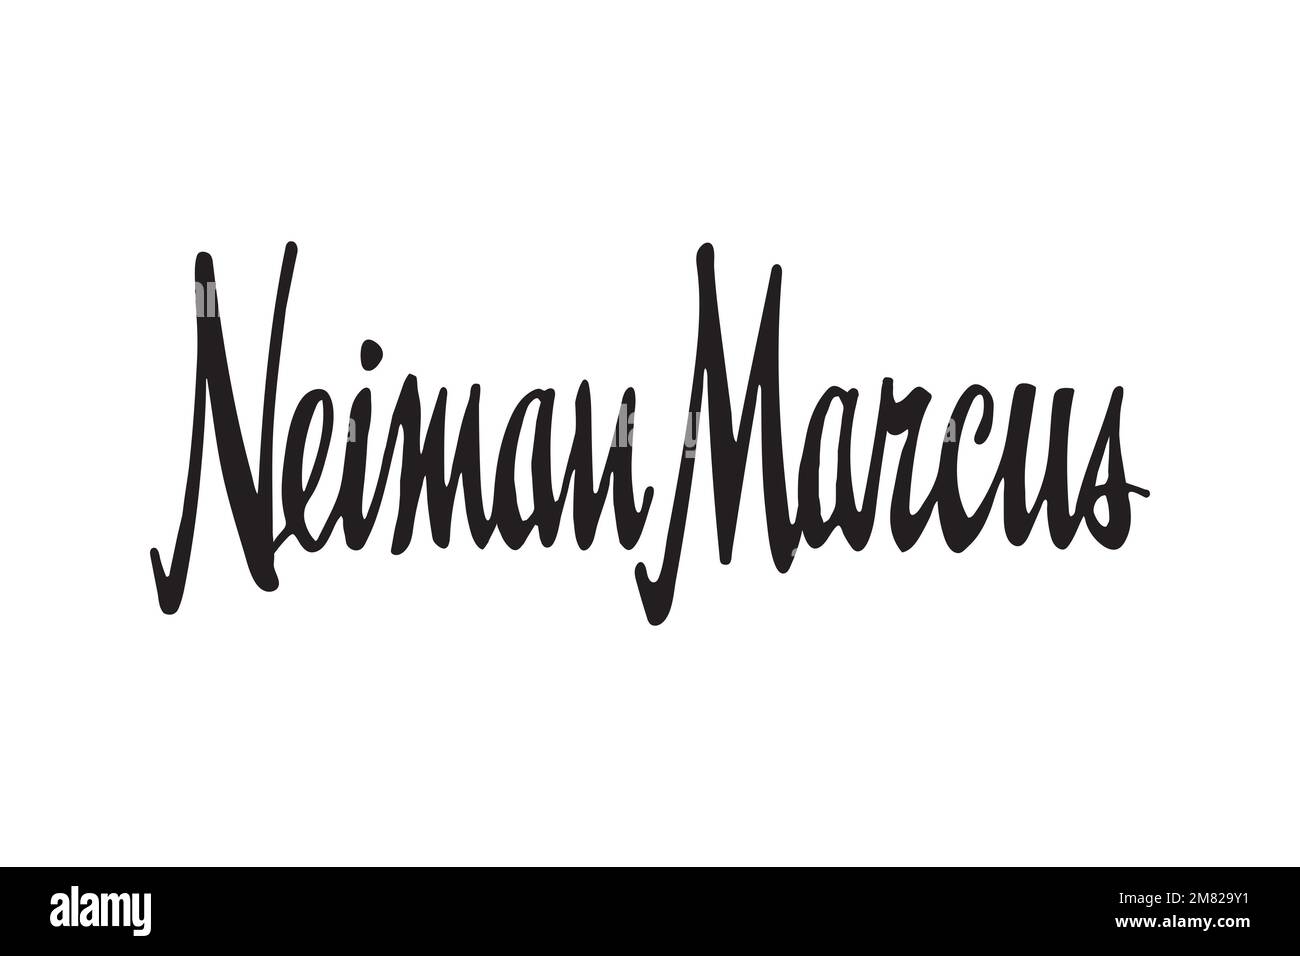 Neiman Marcus logo, NM logo on the Las Vegas store, Hades1981